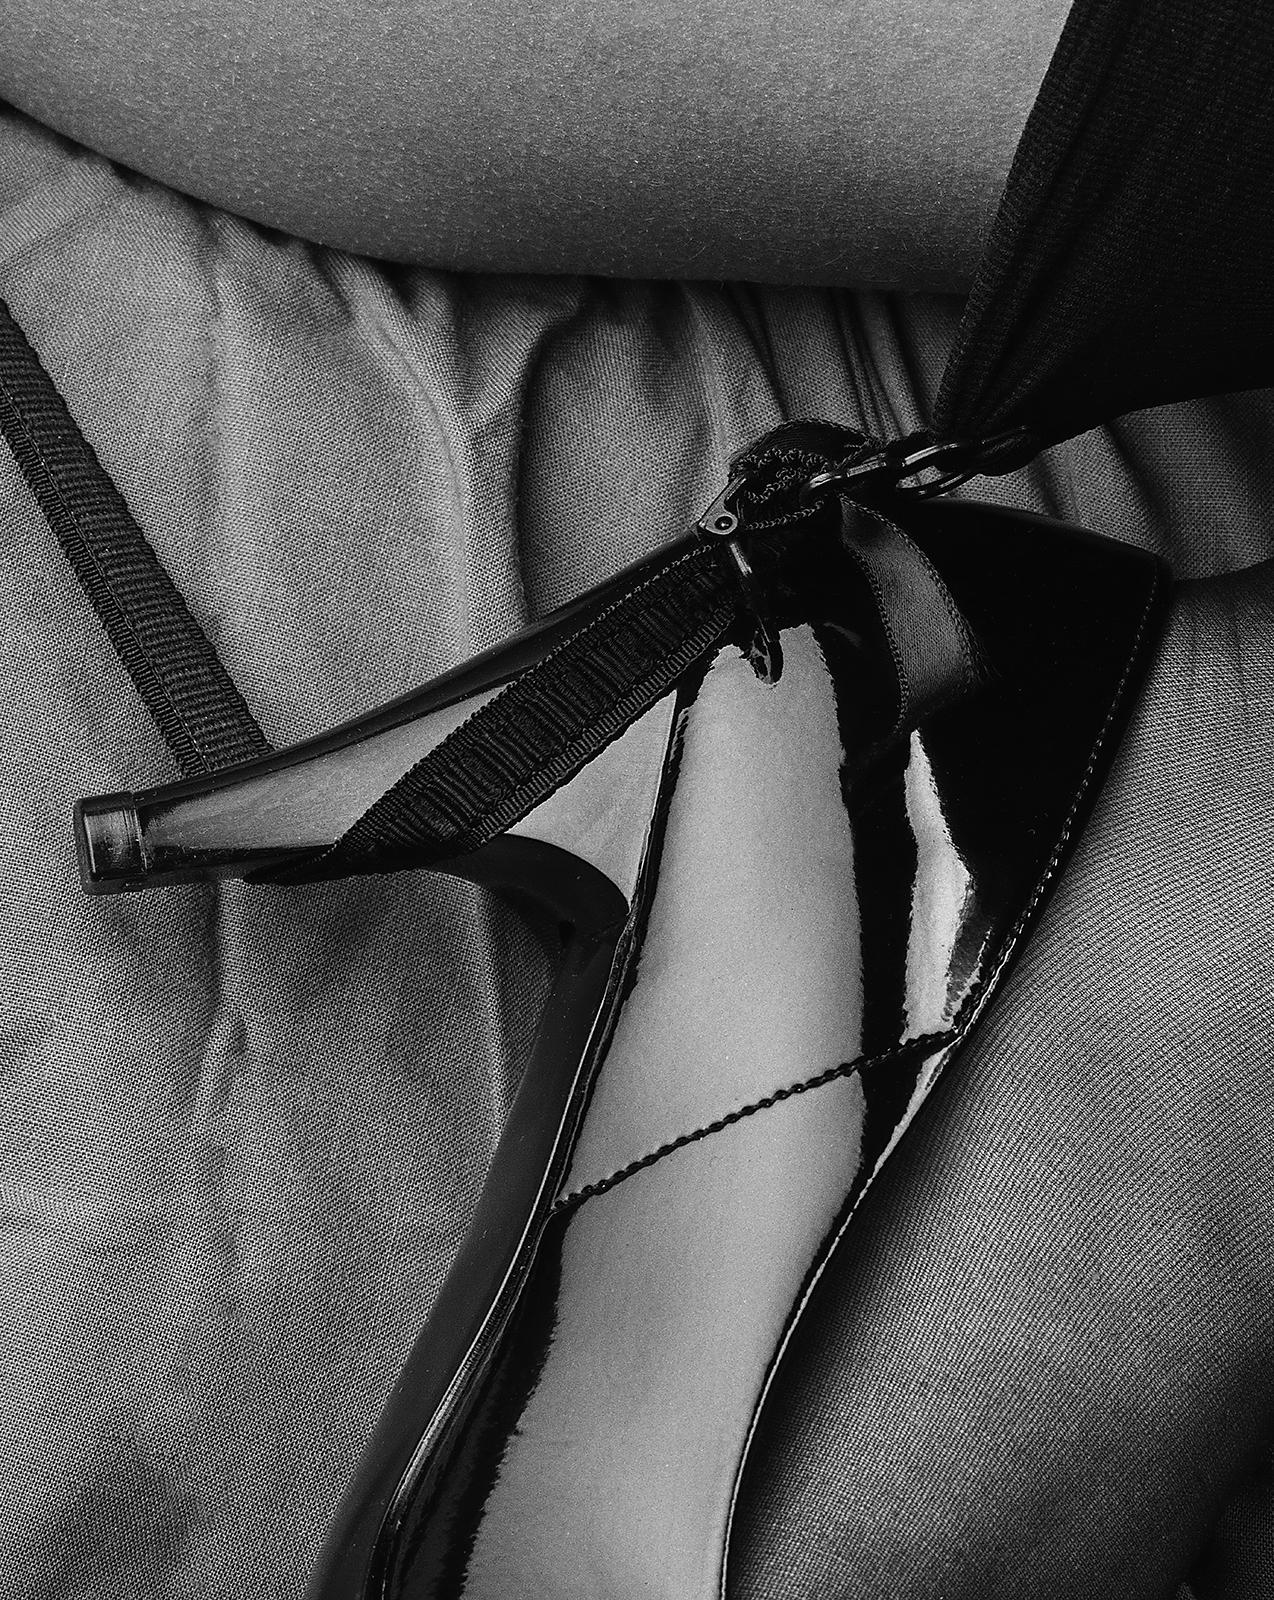 Rachael - Imprimé sexy en édition limitée signé, contemporain, talons hauts, noir et blanc - Photograph de Ian Sanderson